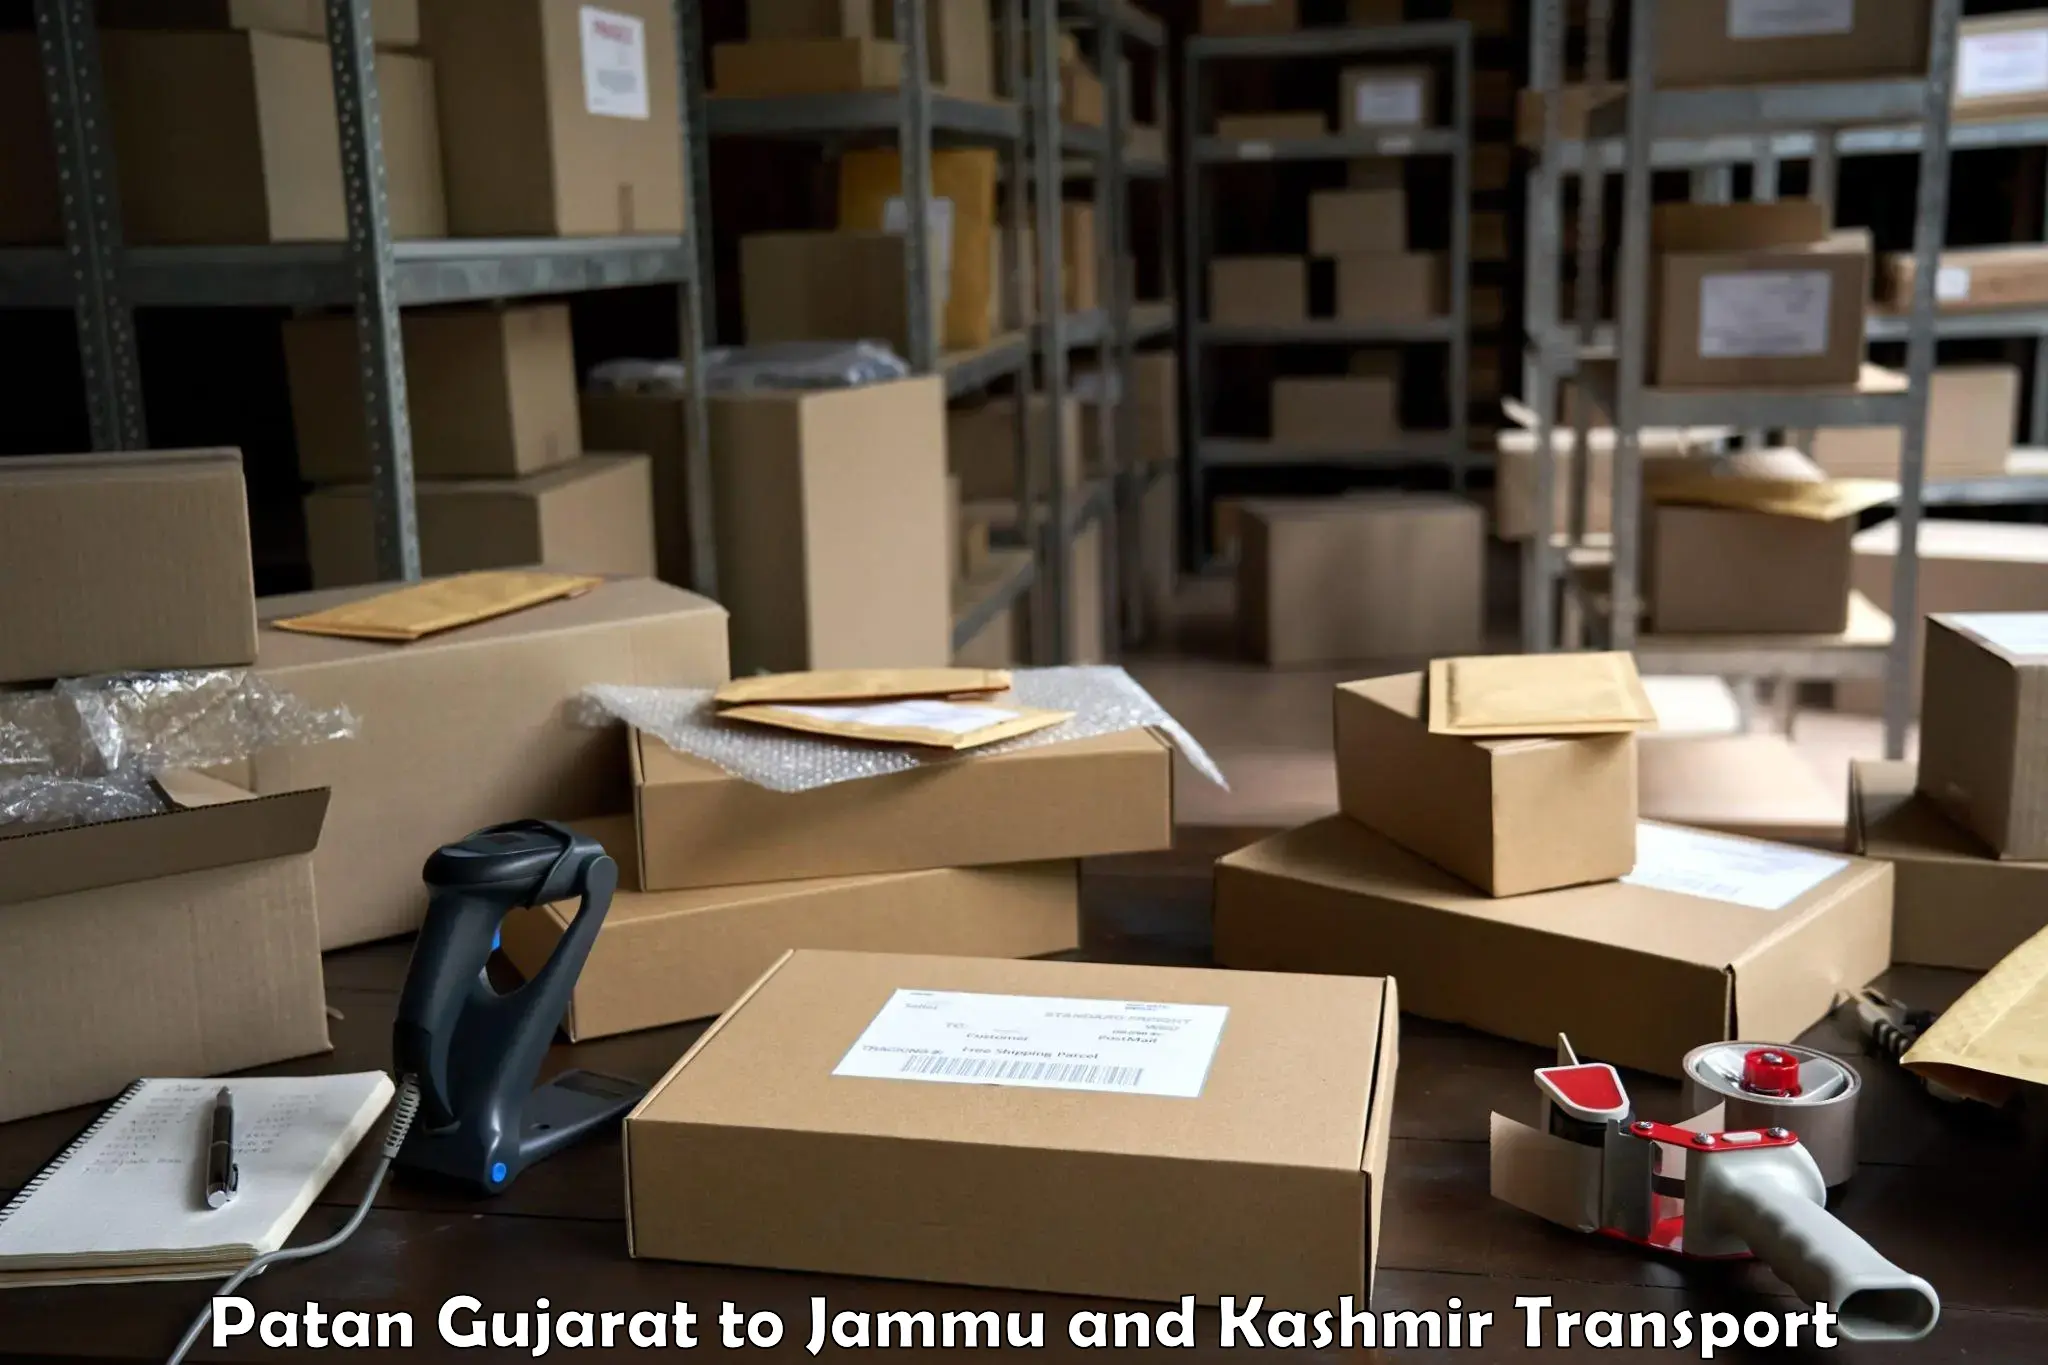 Daily transport service Patan Gujarat to Jammu and Kashmir